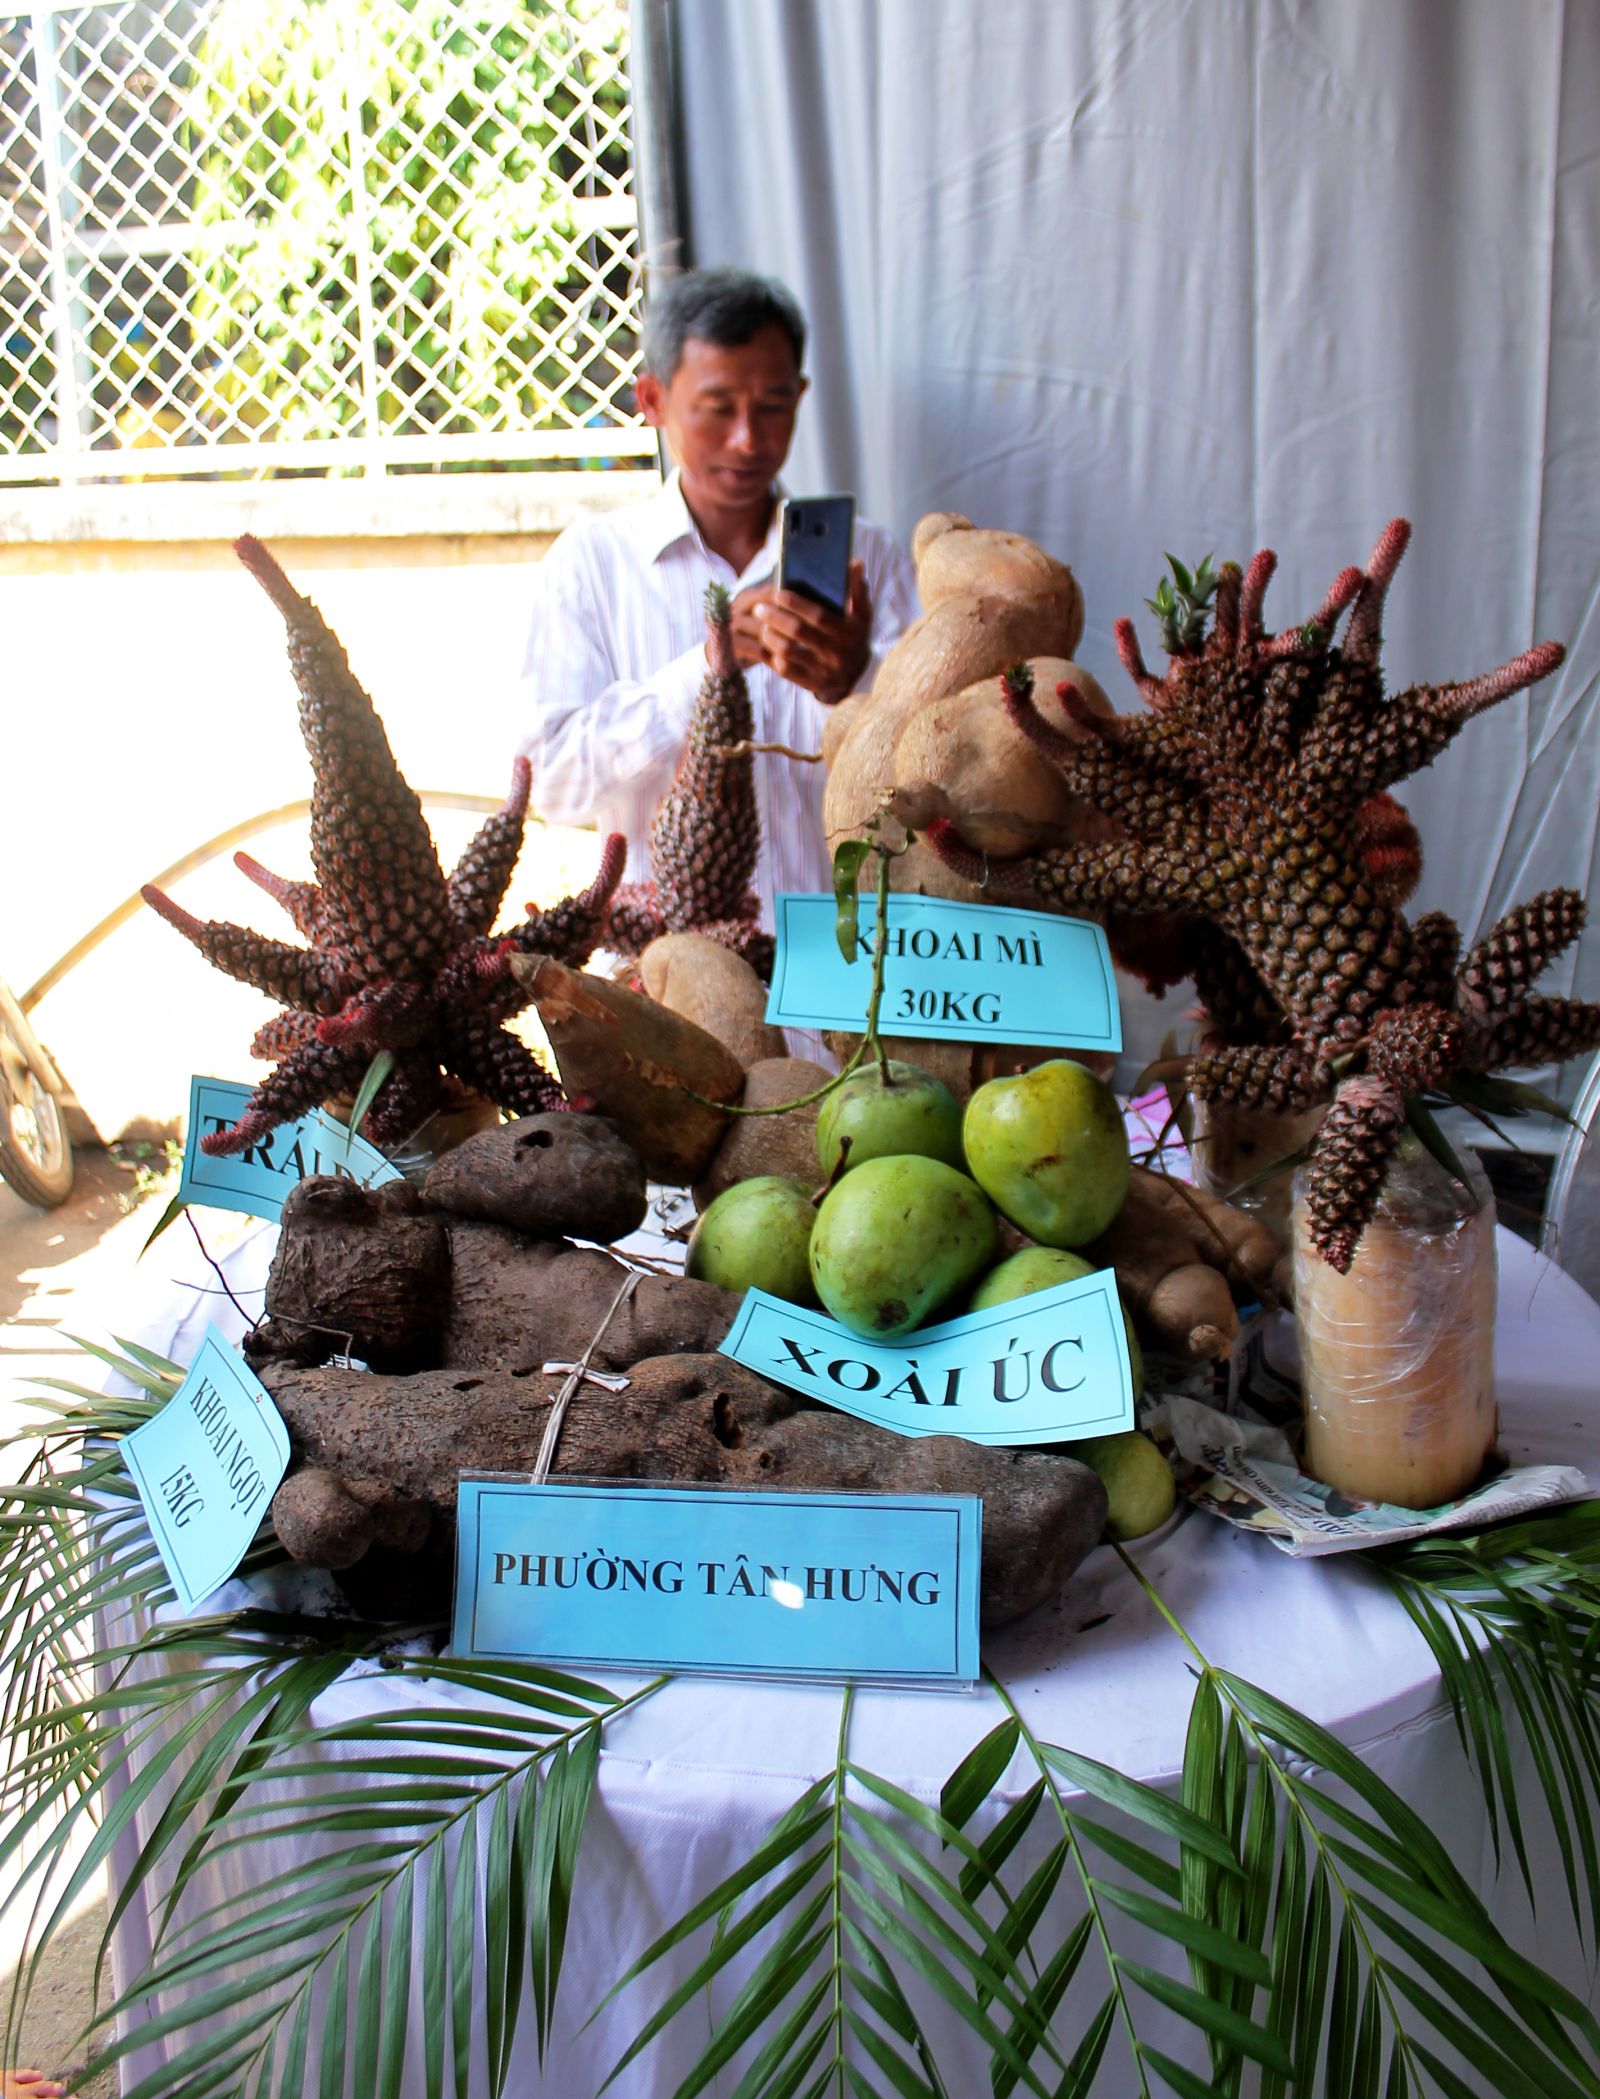 Hội thi “cây, củ quả lạ” với nhiều cây trái độc đáo là một trong những điểm thu hút tại lễ hội.